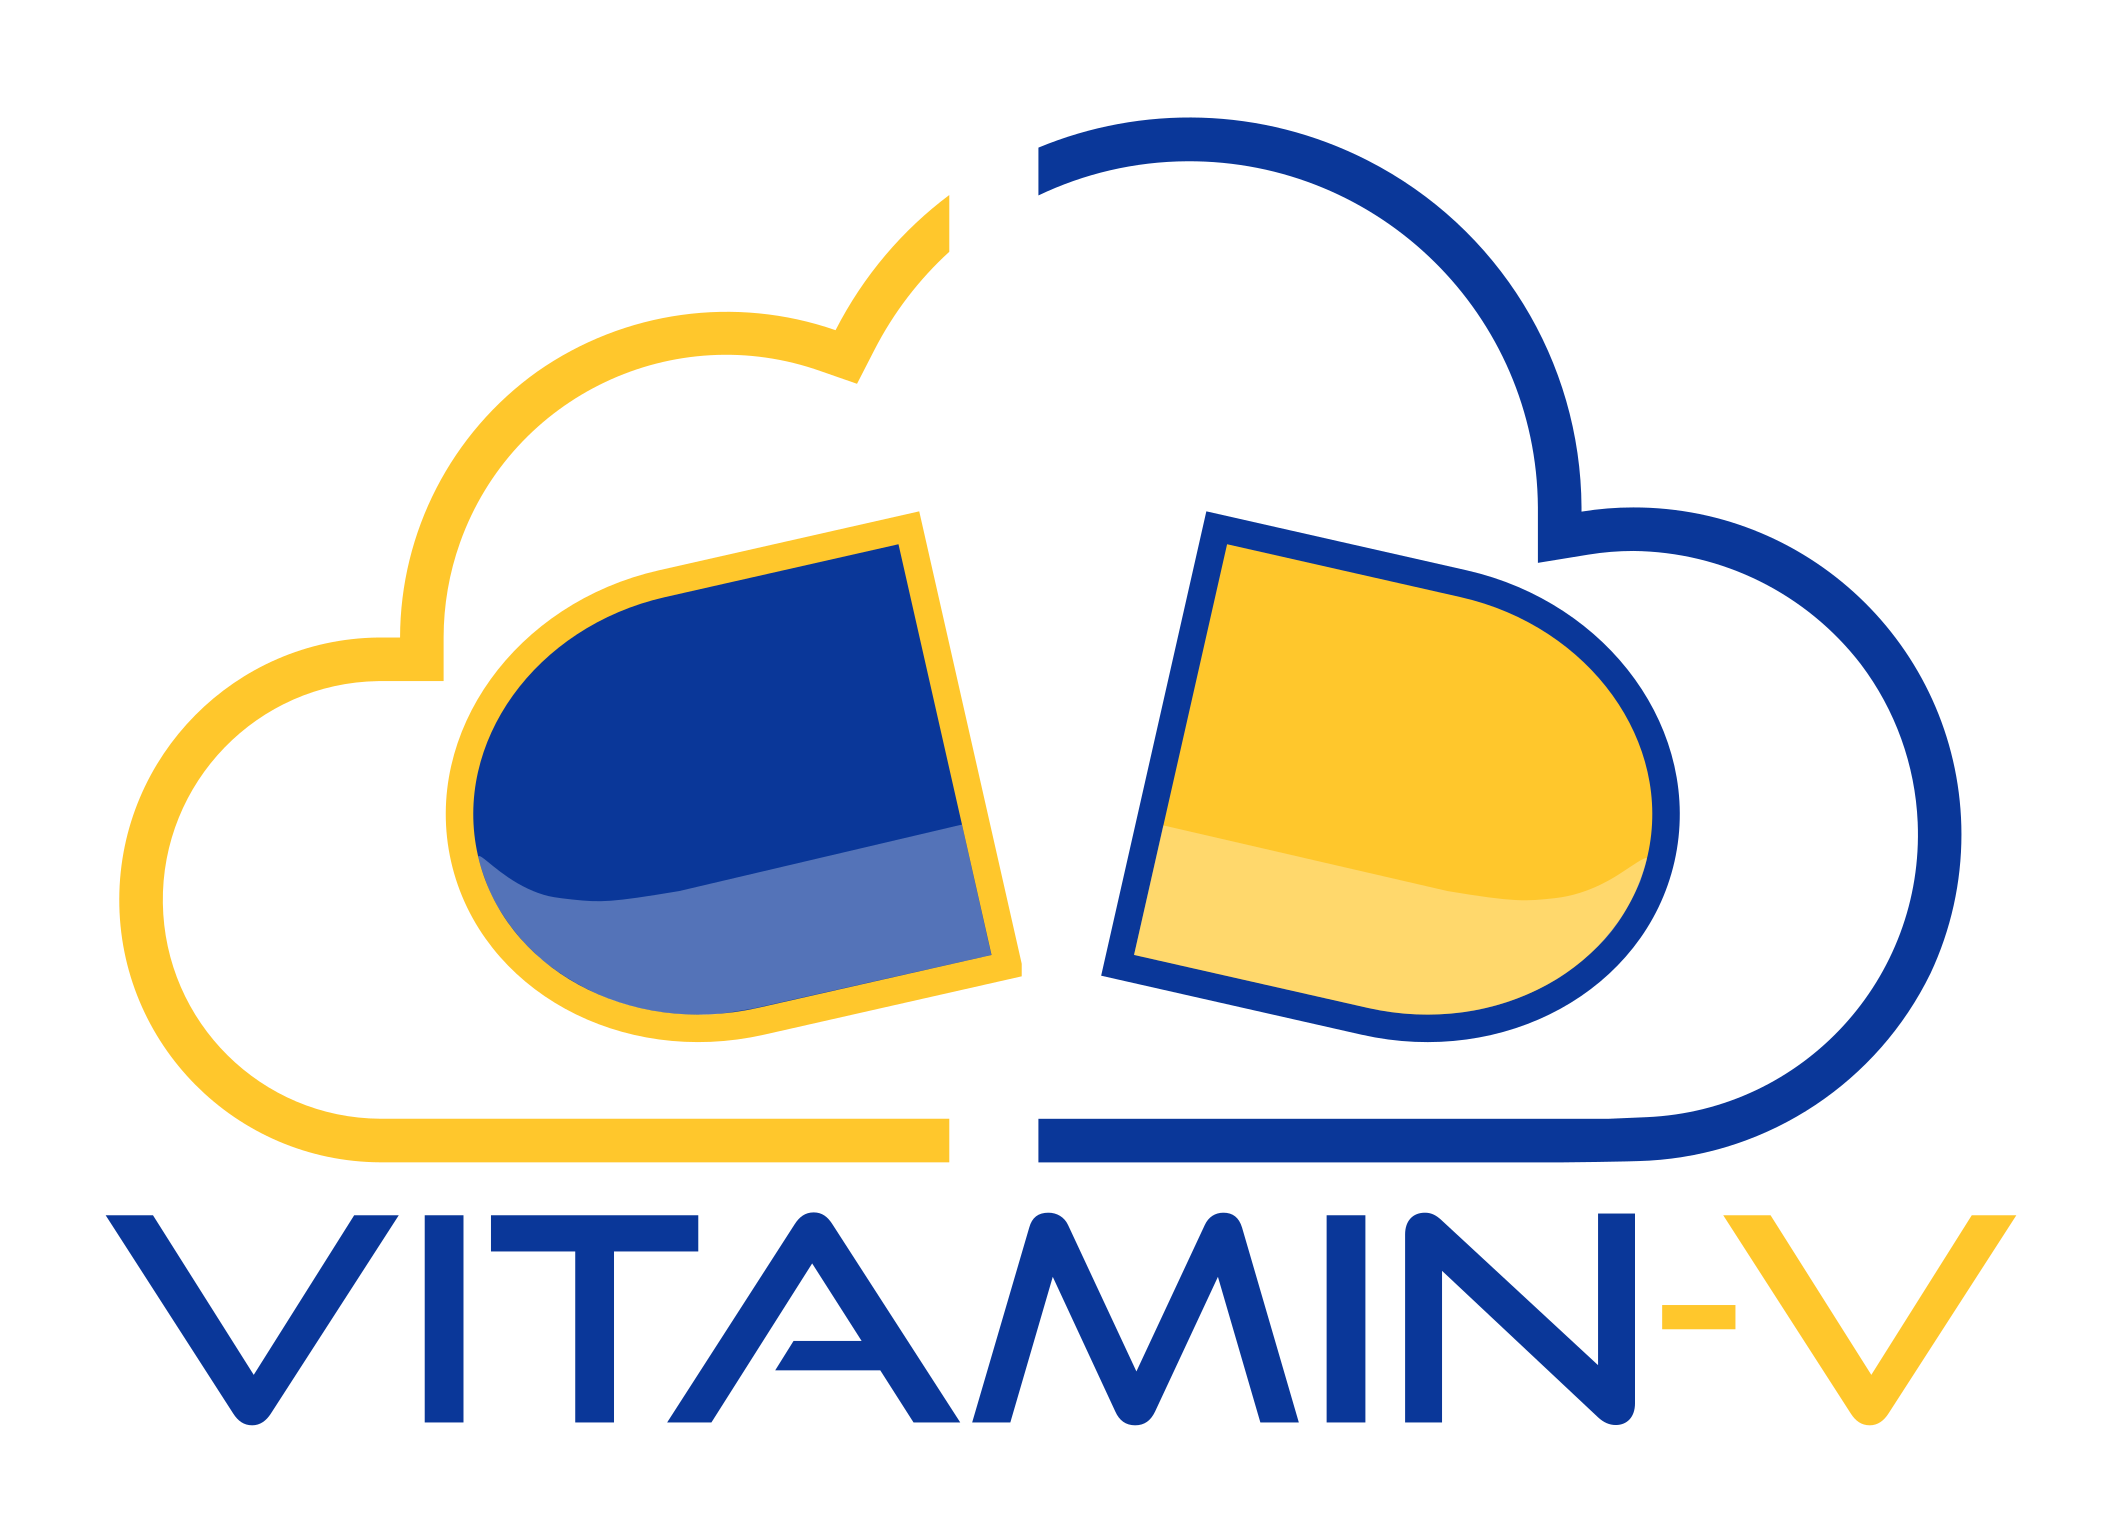 Le projet Vitamin-V Horizon Europe a pour ambition de jeter les bases du cloud européen basé sur RISC-V